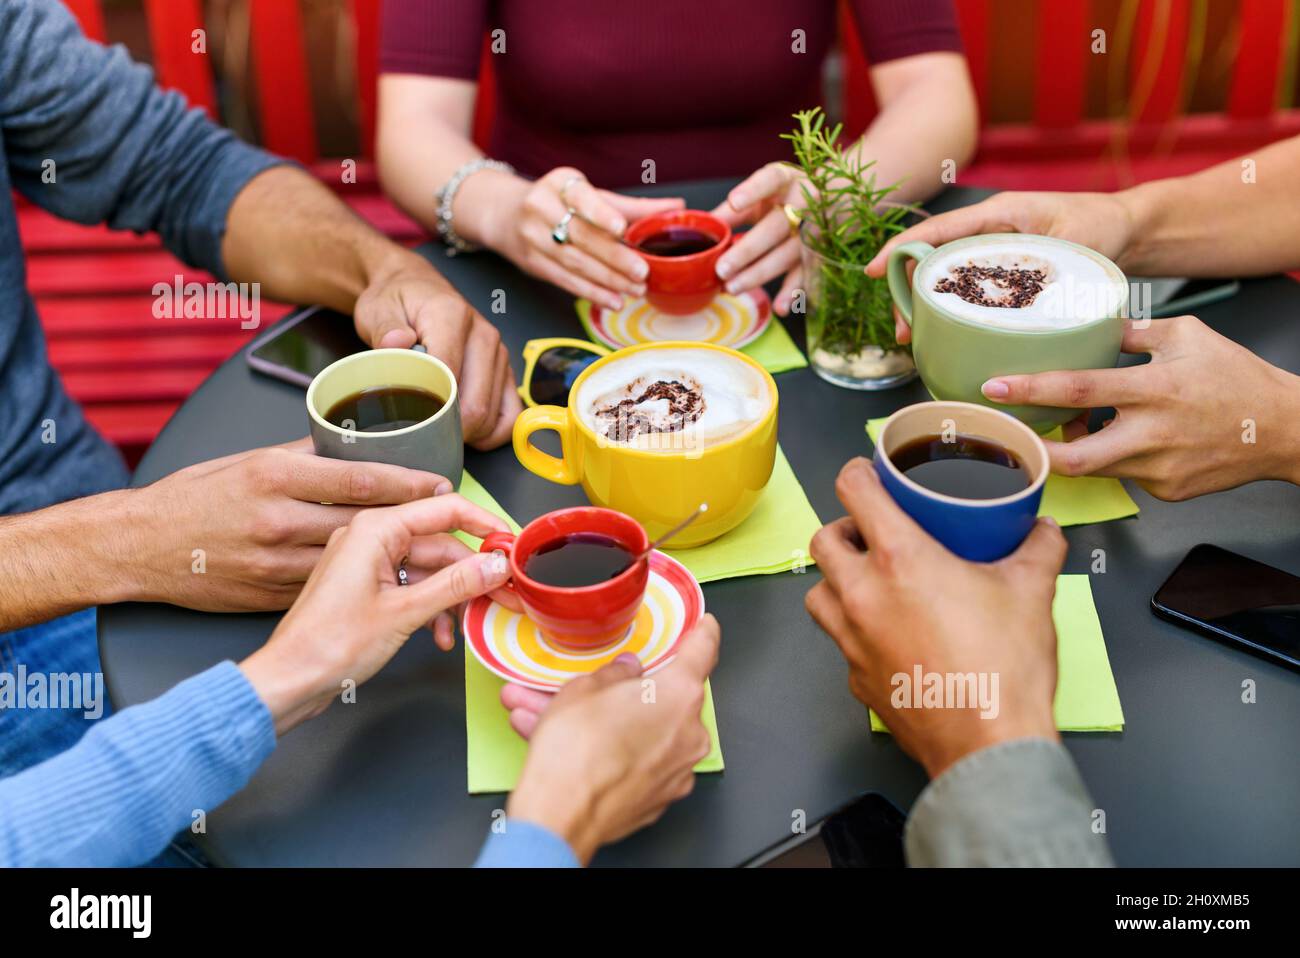 Par-dessus la récolte des amis méconnaissables assis à table ronde noire et tenant des tasses de café et de cappuccino tout en passant du temps ensemble dans le café Banque D'Images